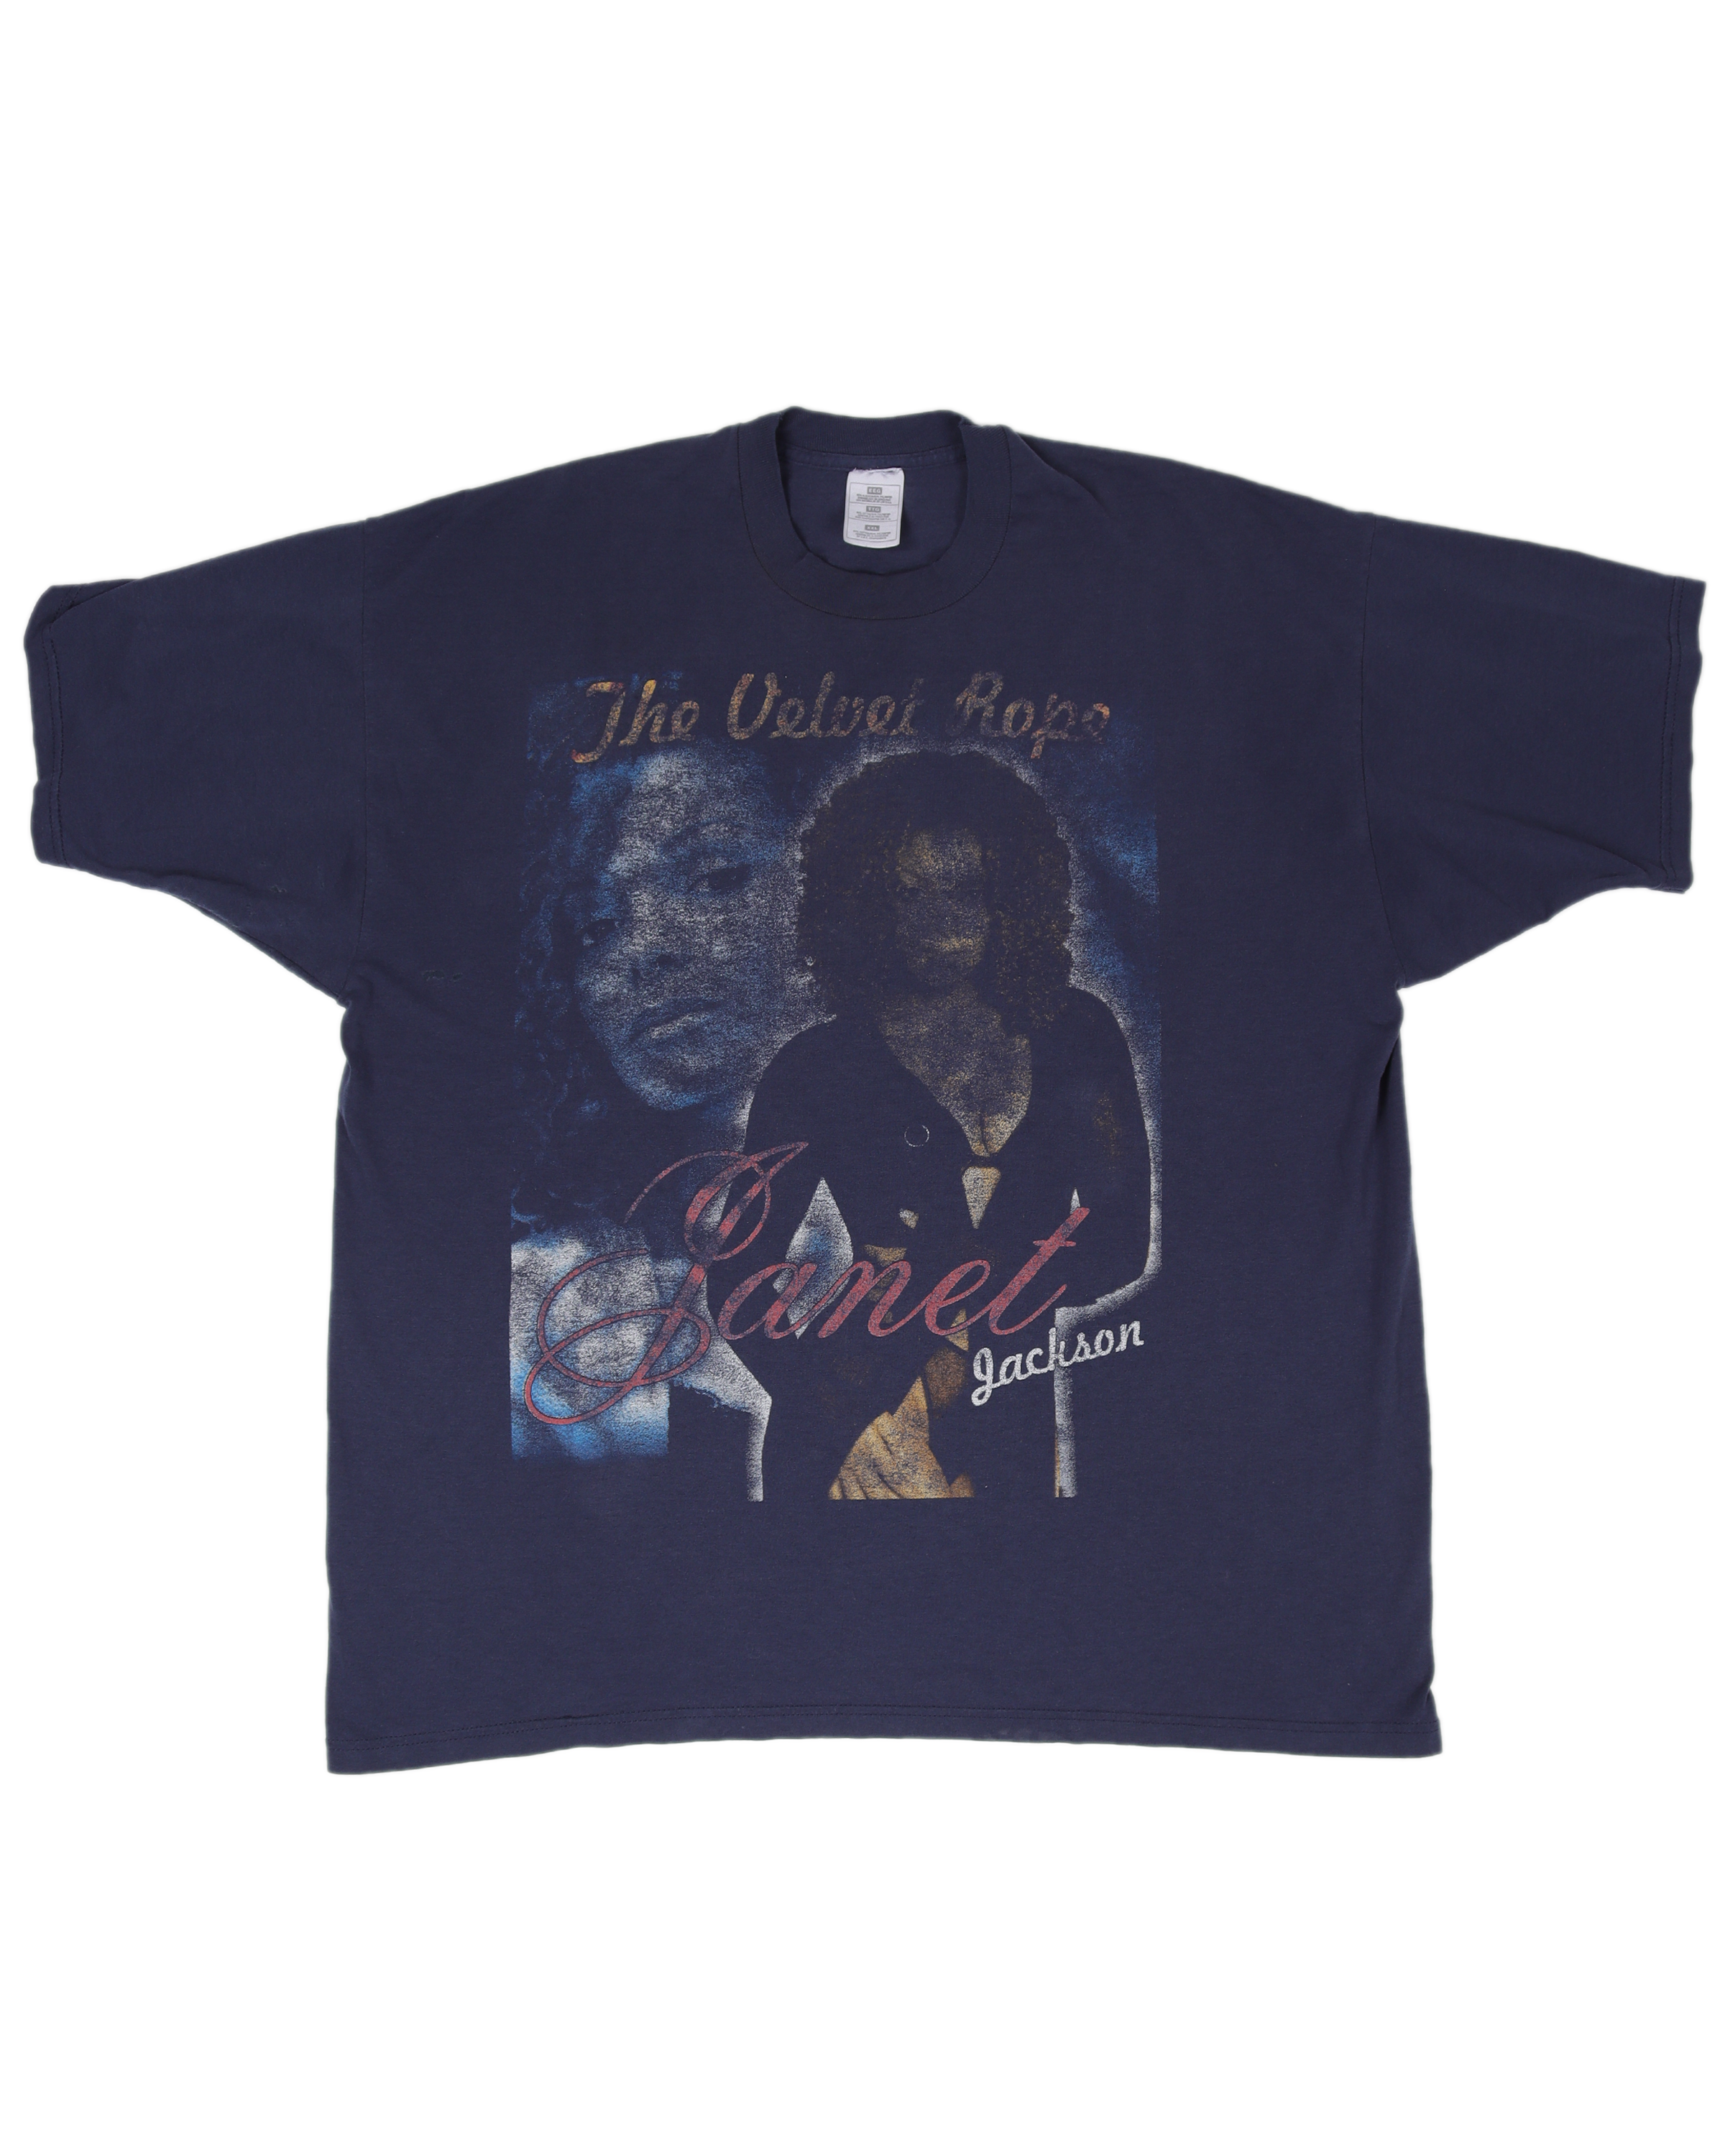 Janet Jackson Velvet Rope Faded T-Shirt